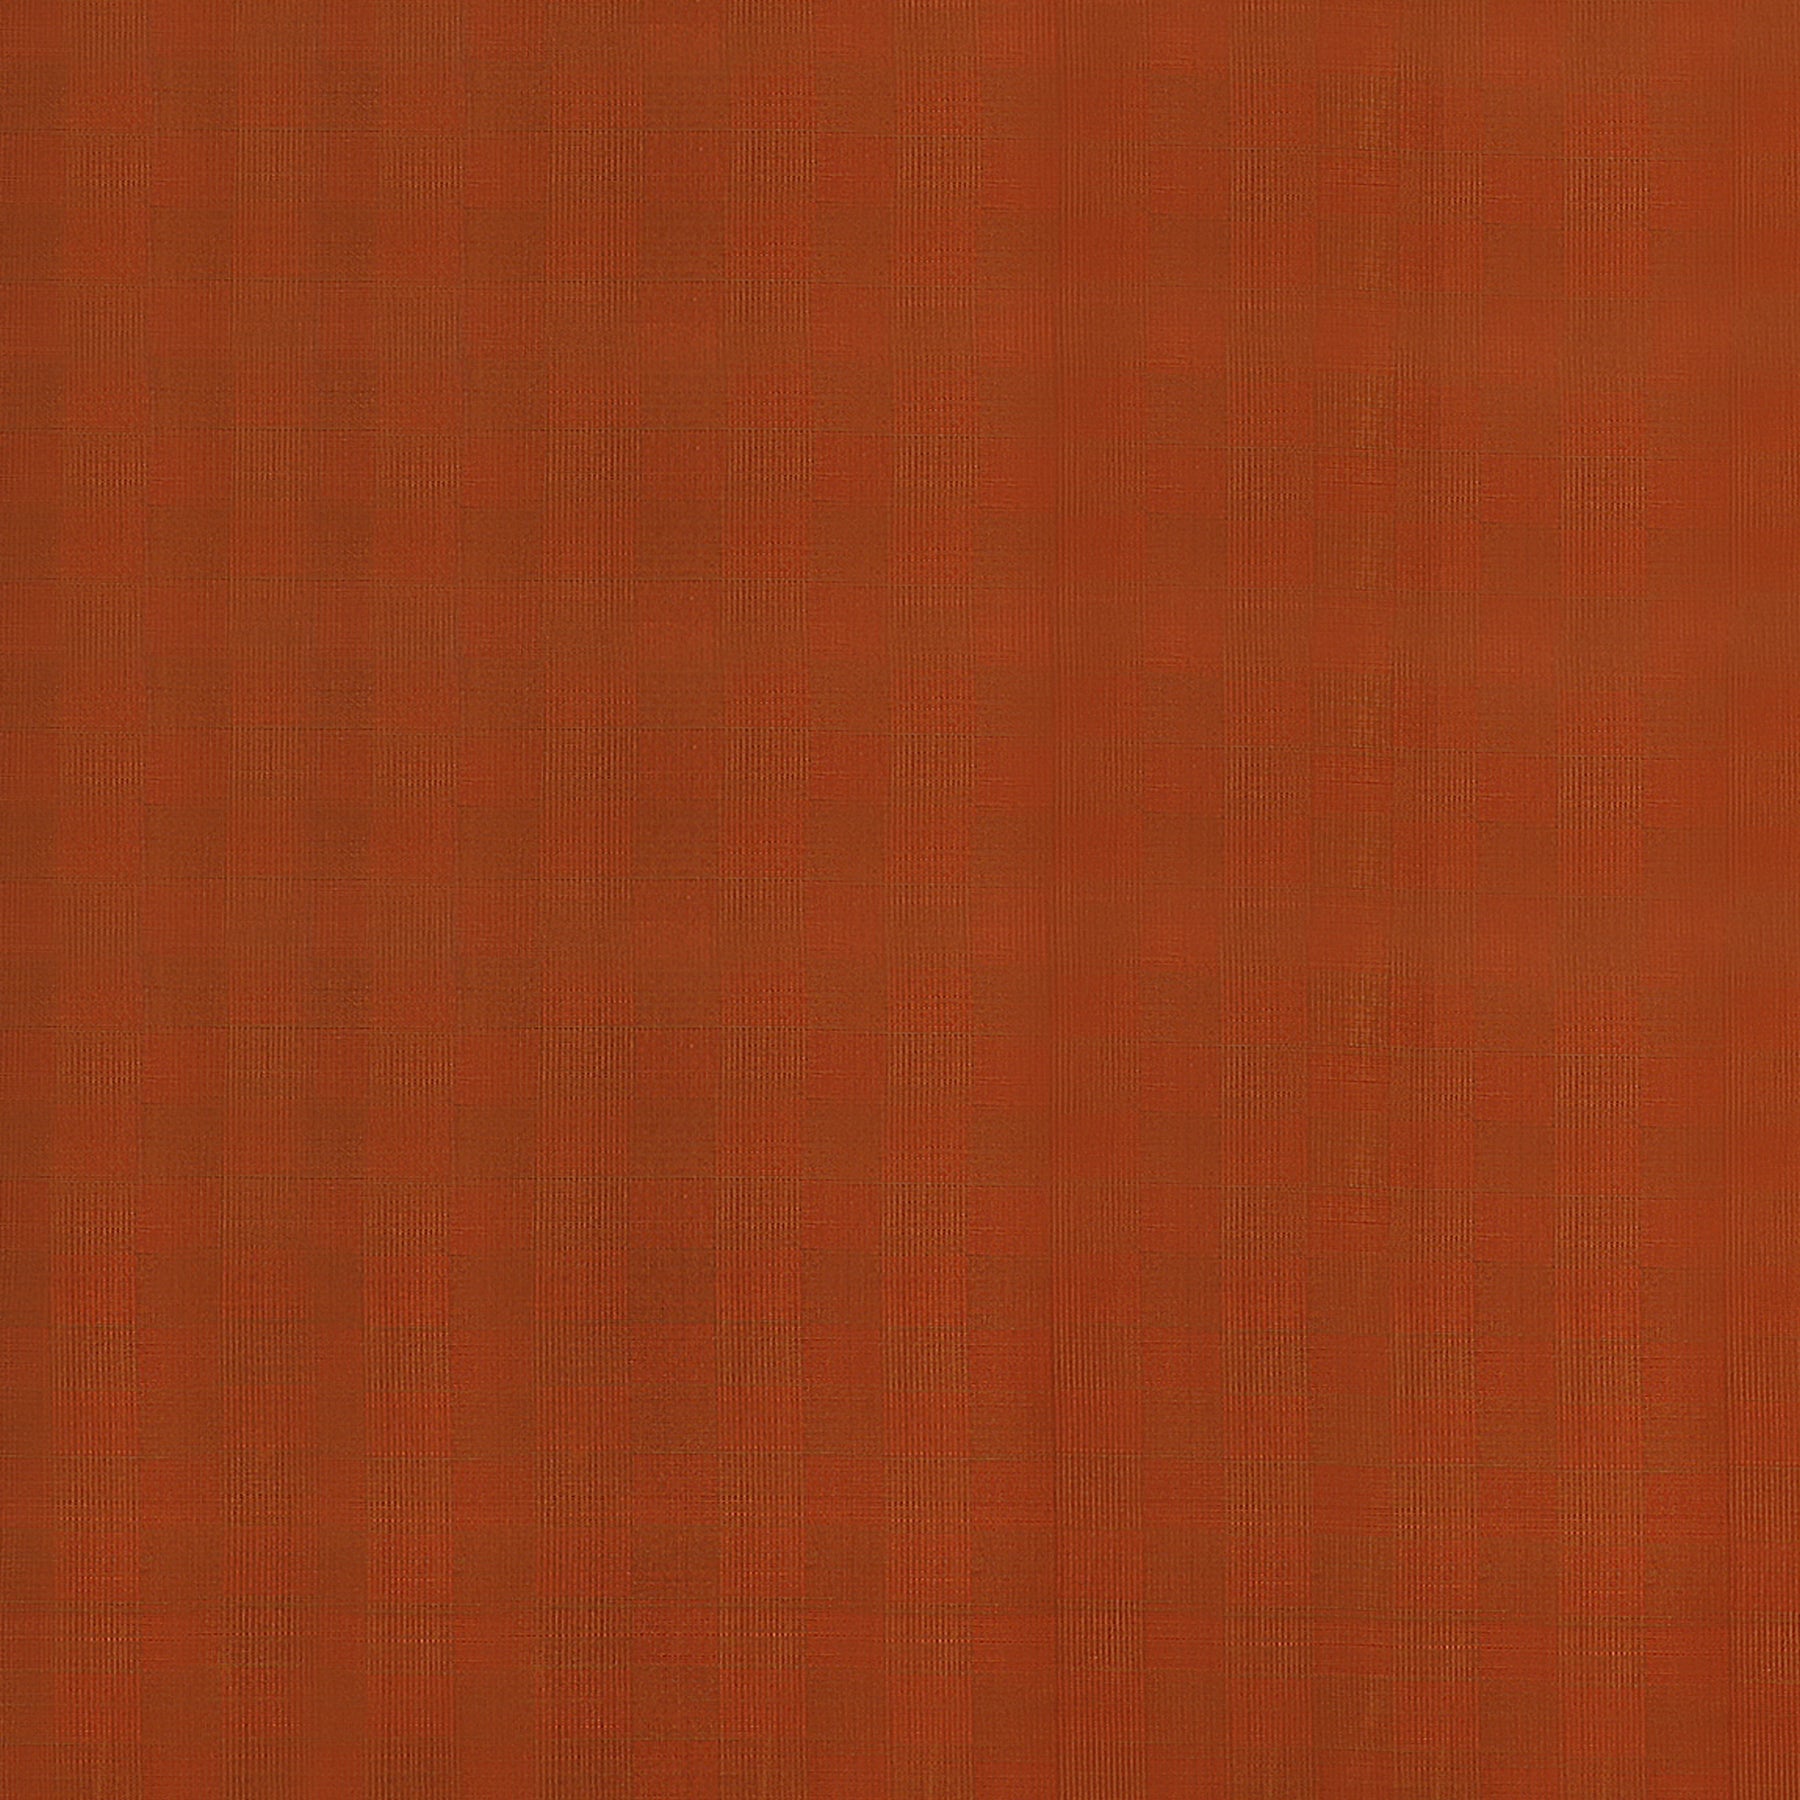 Kanakavalli Kanjivaram Silk Fabric Length 110-27-110223 - Full View Close Up